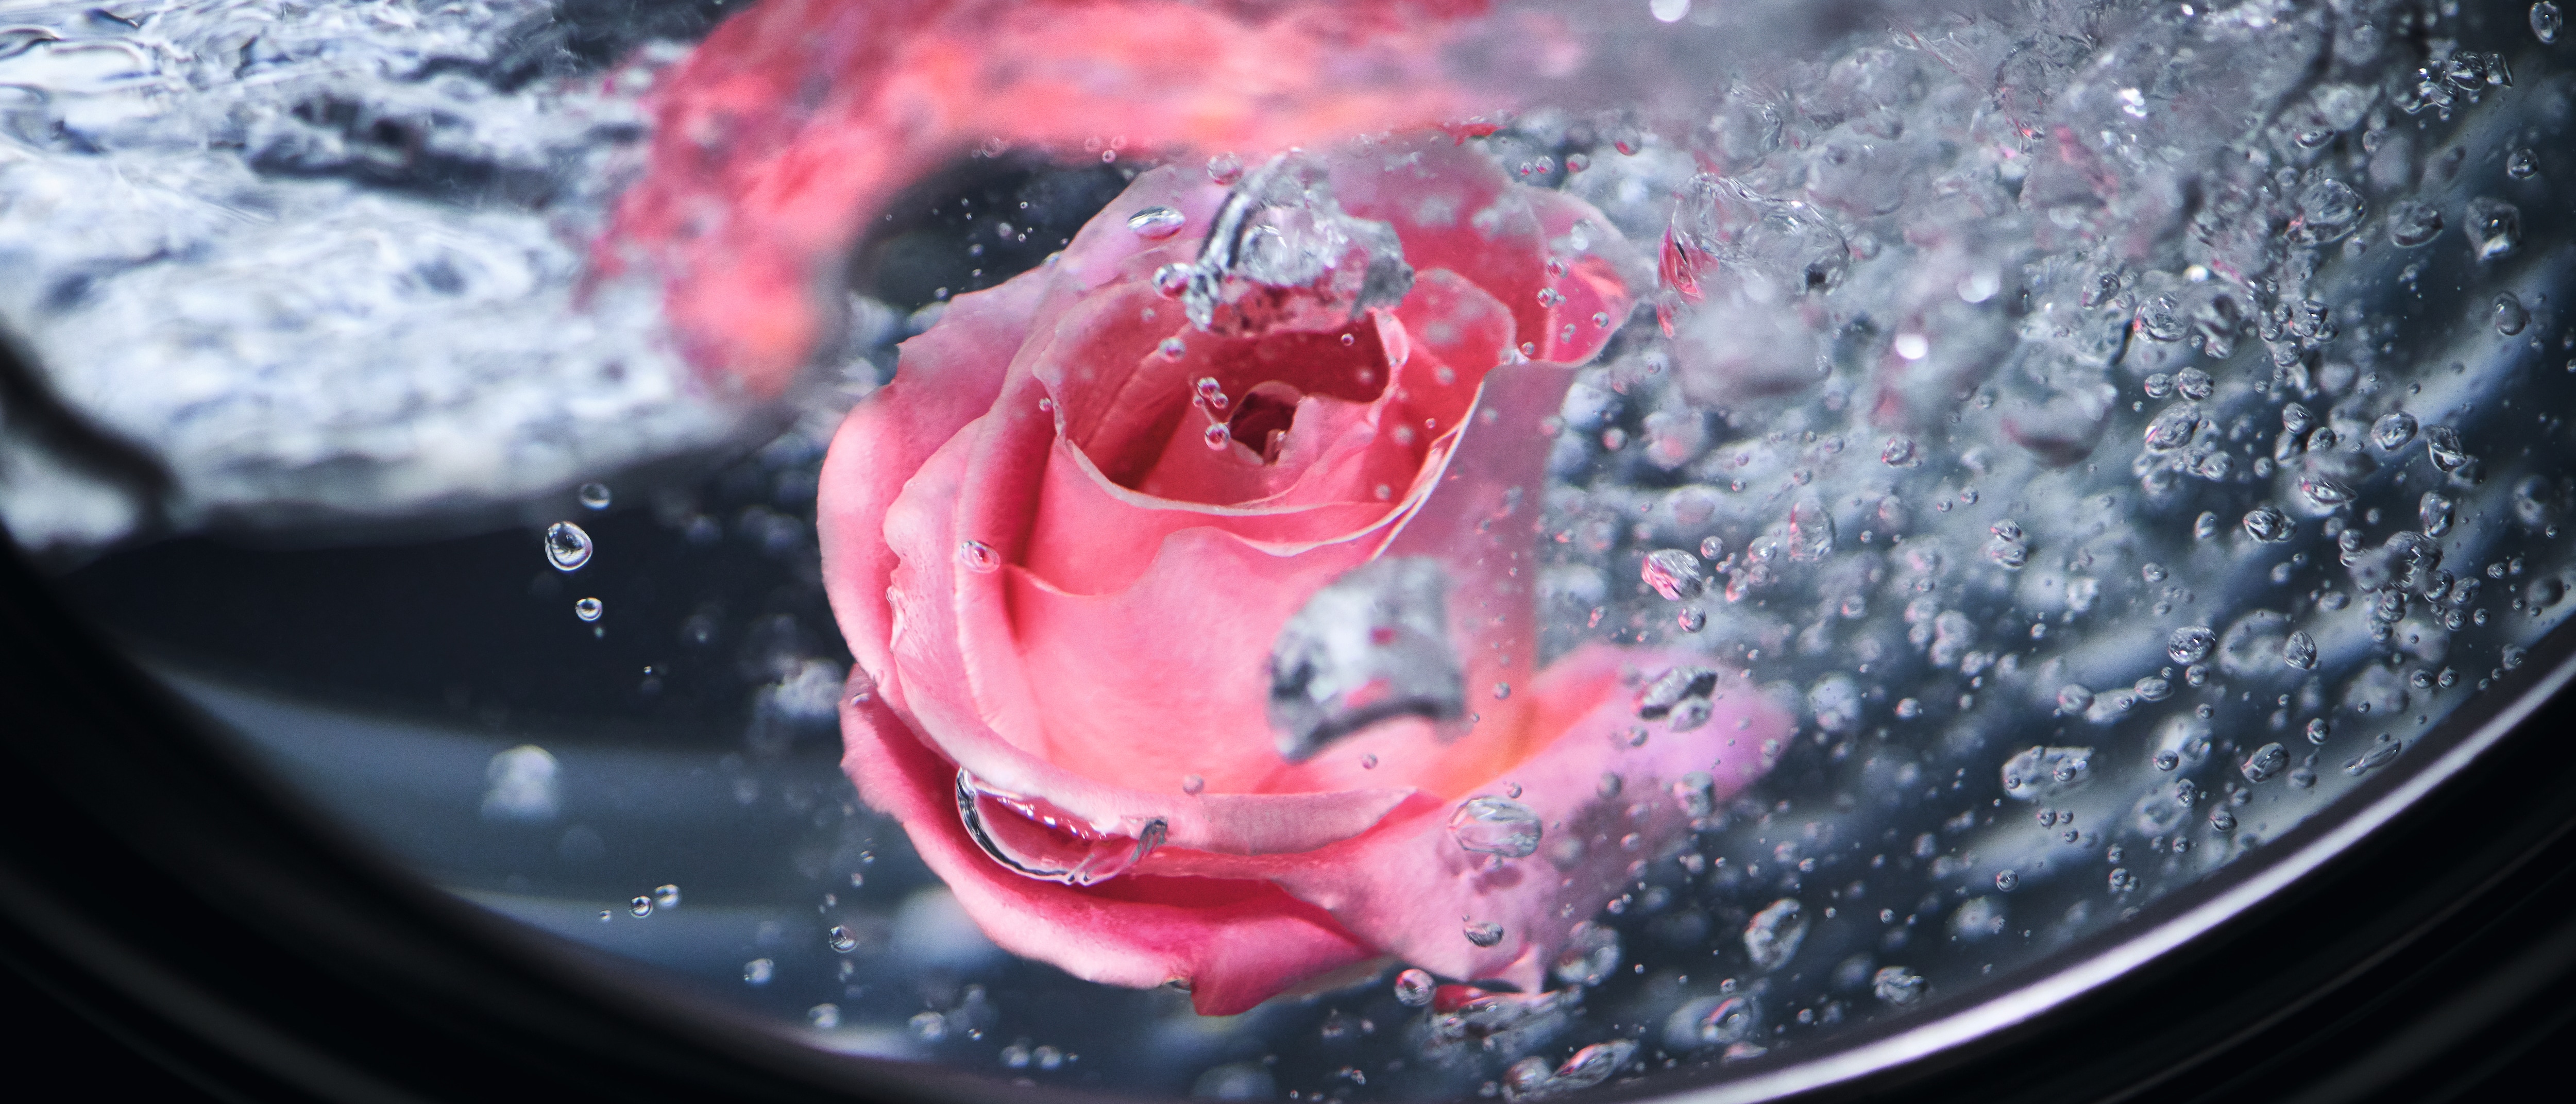 Kwiat pływający w wodzie w pralce Miele